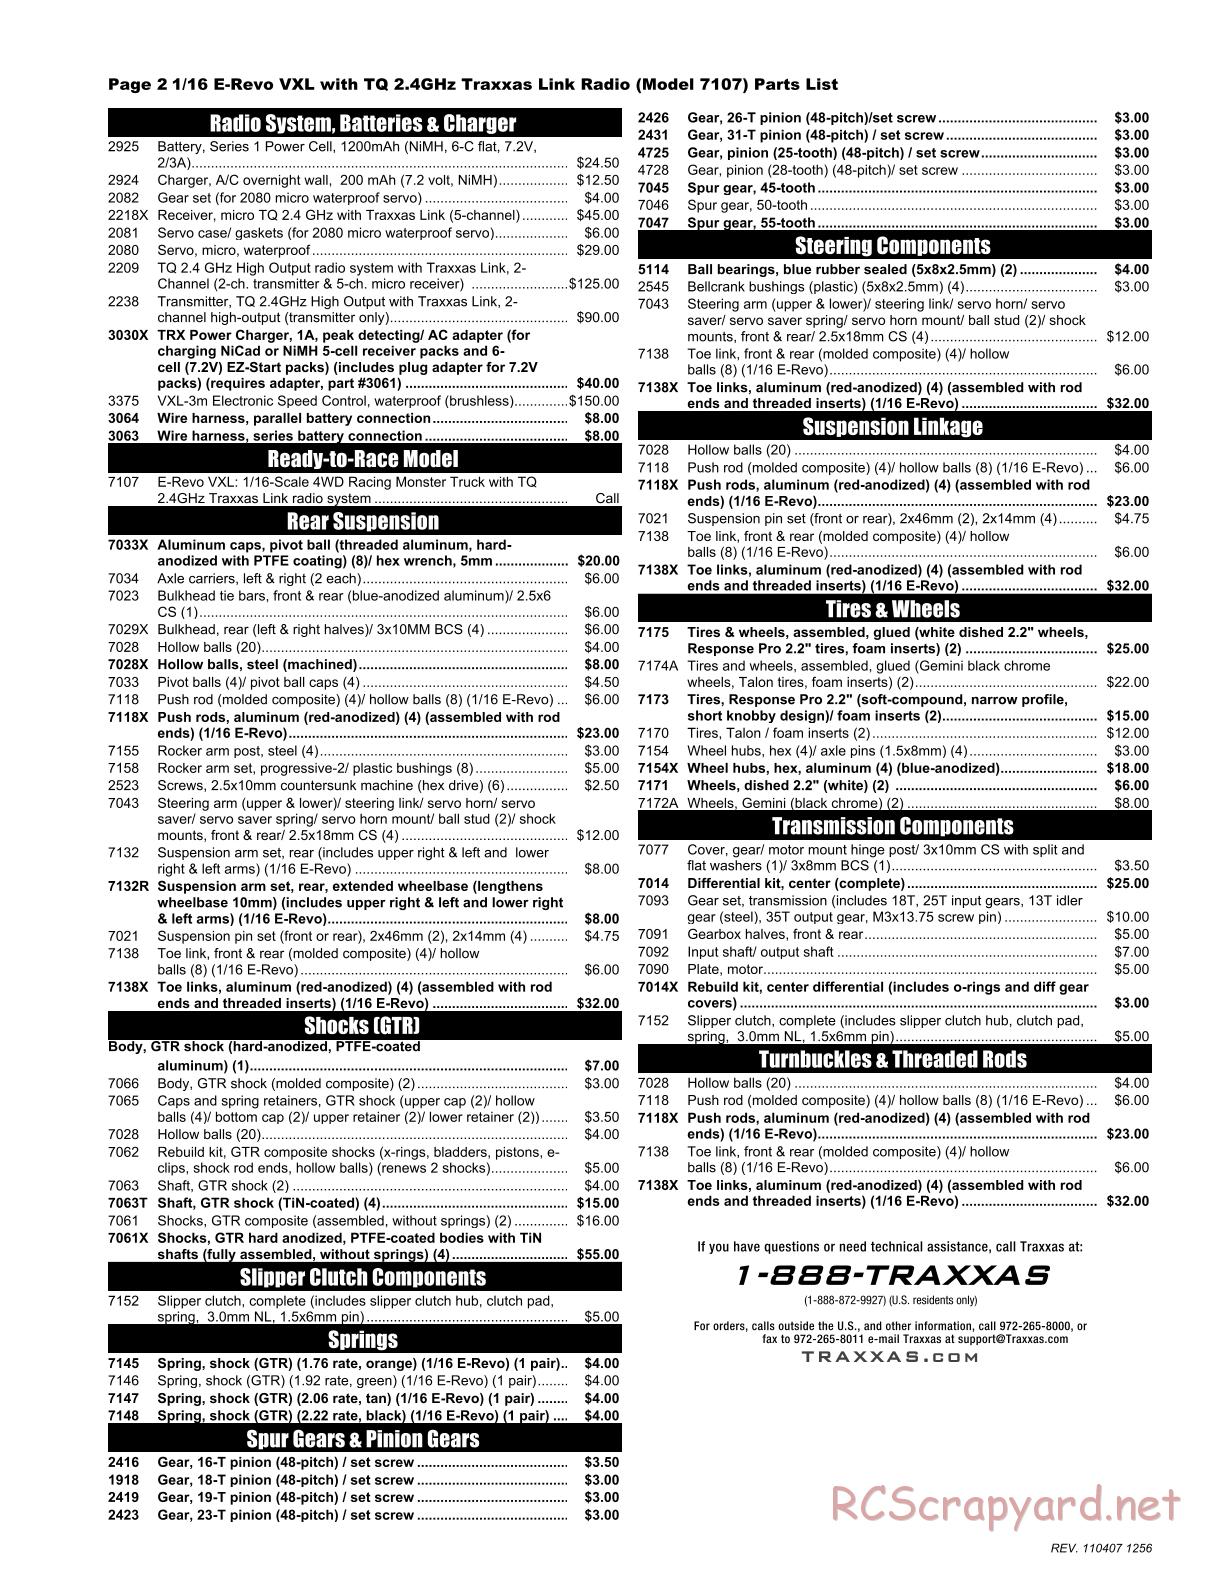 Traxxas - 1/16 E-Revo VXL (2010) - Parts List - Page 2